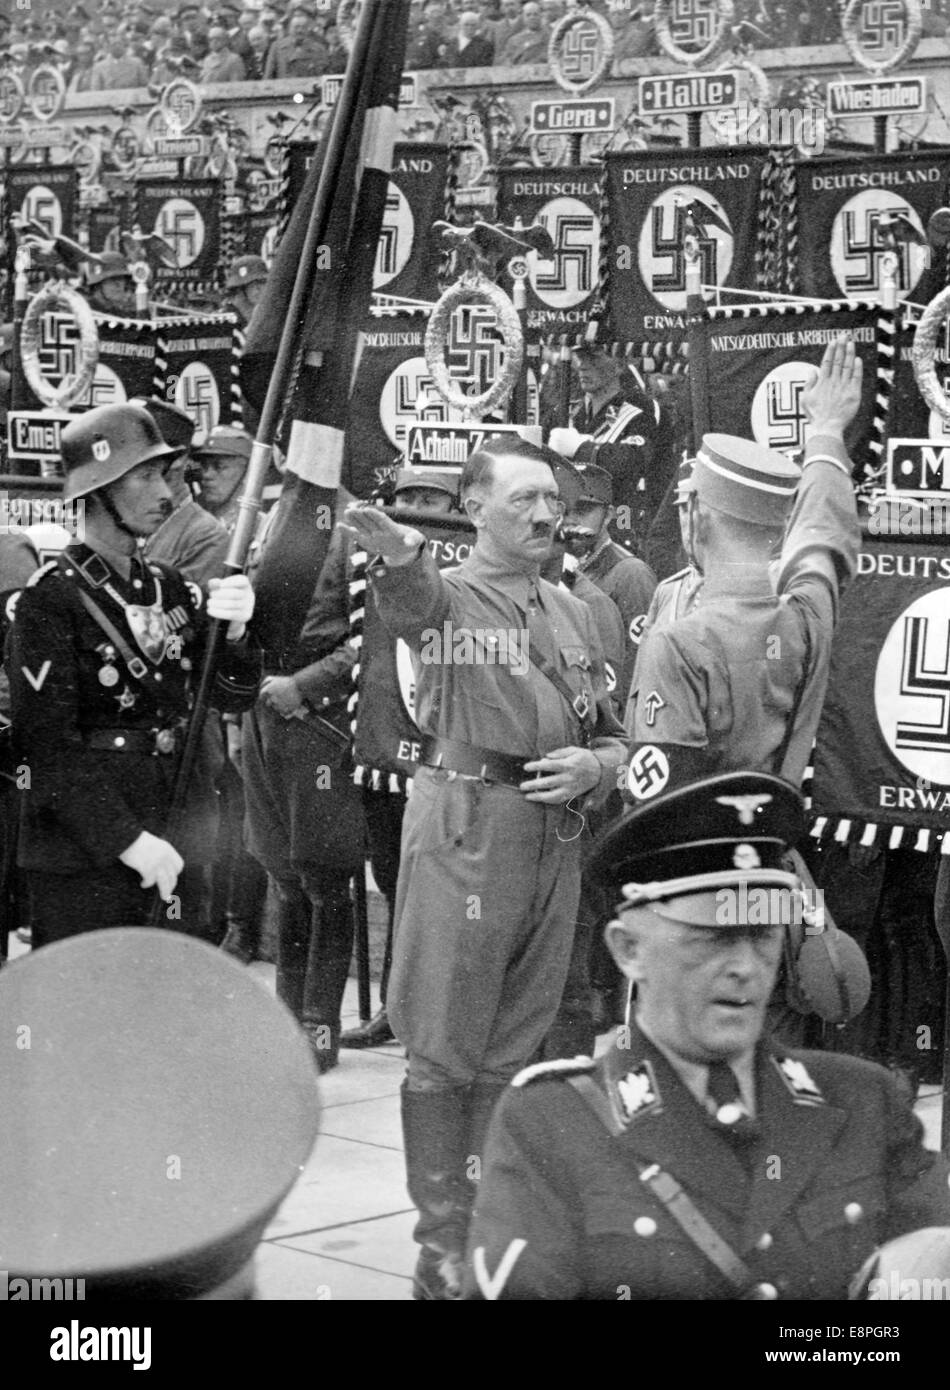 Nürnberg Rallye 1937 in Nürnberg, Deutschland - die neuen Standards sind mit "Blut-Flagge" von Adolf Hitler während der großen Appell der Sturmtruppe (SA), Schutzstaffel (SS), nationale sozialistische Motor-Korps (NSKK) und nationalen sozialistischen Flyer Corps (NSFK) am Puitpoldarena auf dem Gelände der Nazi-Partei Rallye geweiht. Die "Blut" Fahnenträger Jakob Grimminger steht hinter Hitler. Neue Maßstäbe der SA und SS waren "geweiht" durch Berühren der Blut-Flagge, die angeblich in der gescheiterten Bier Hall Putsch vollzogen wurde. (Mängel in der Qualität durch das historische Bild kopieren) Foto: Berliner Ver Stockfoto